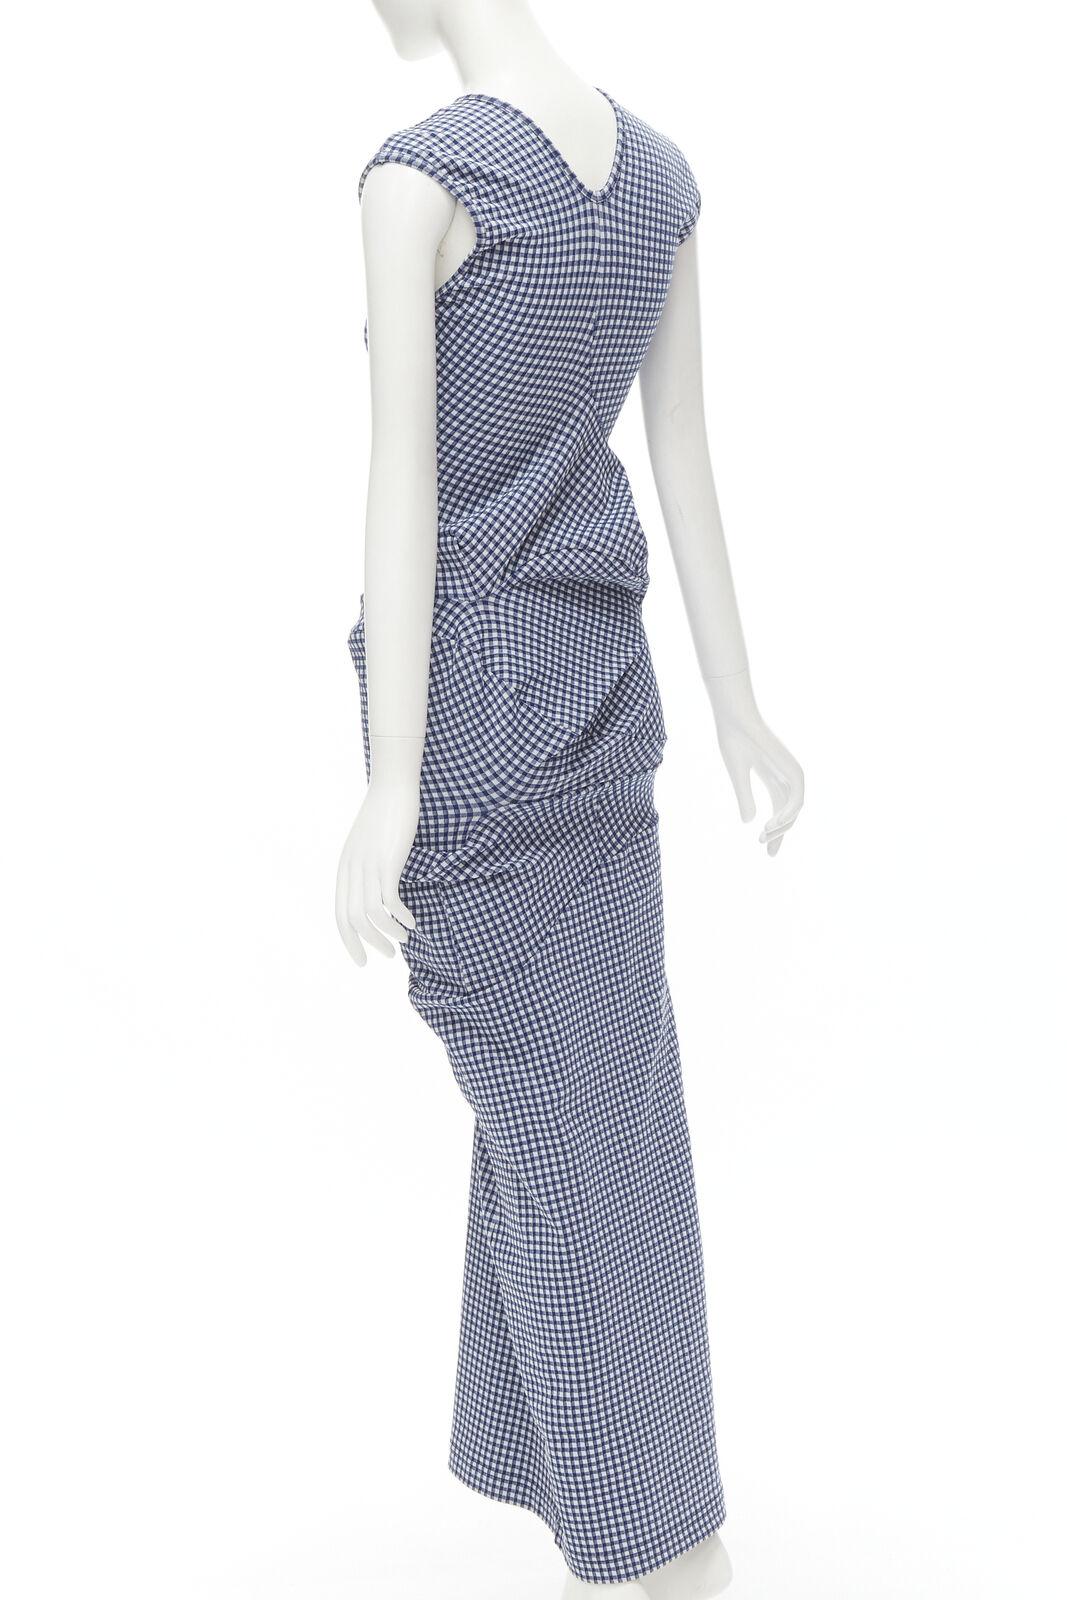 rare COMME DES GARCONS Robe De Chambre Vintage 1997 Lumps Bumps blue dress For Sale 2